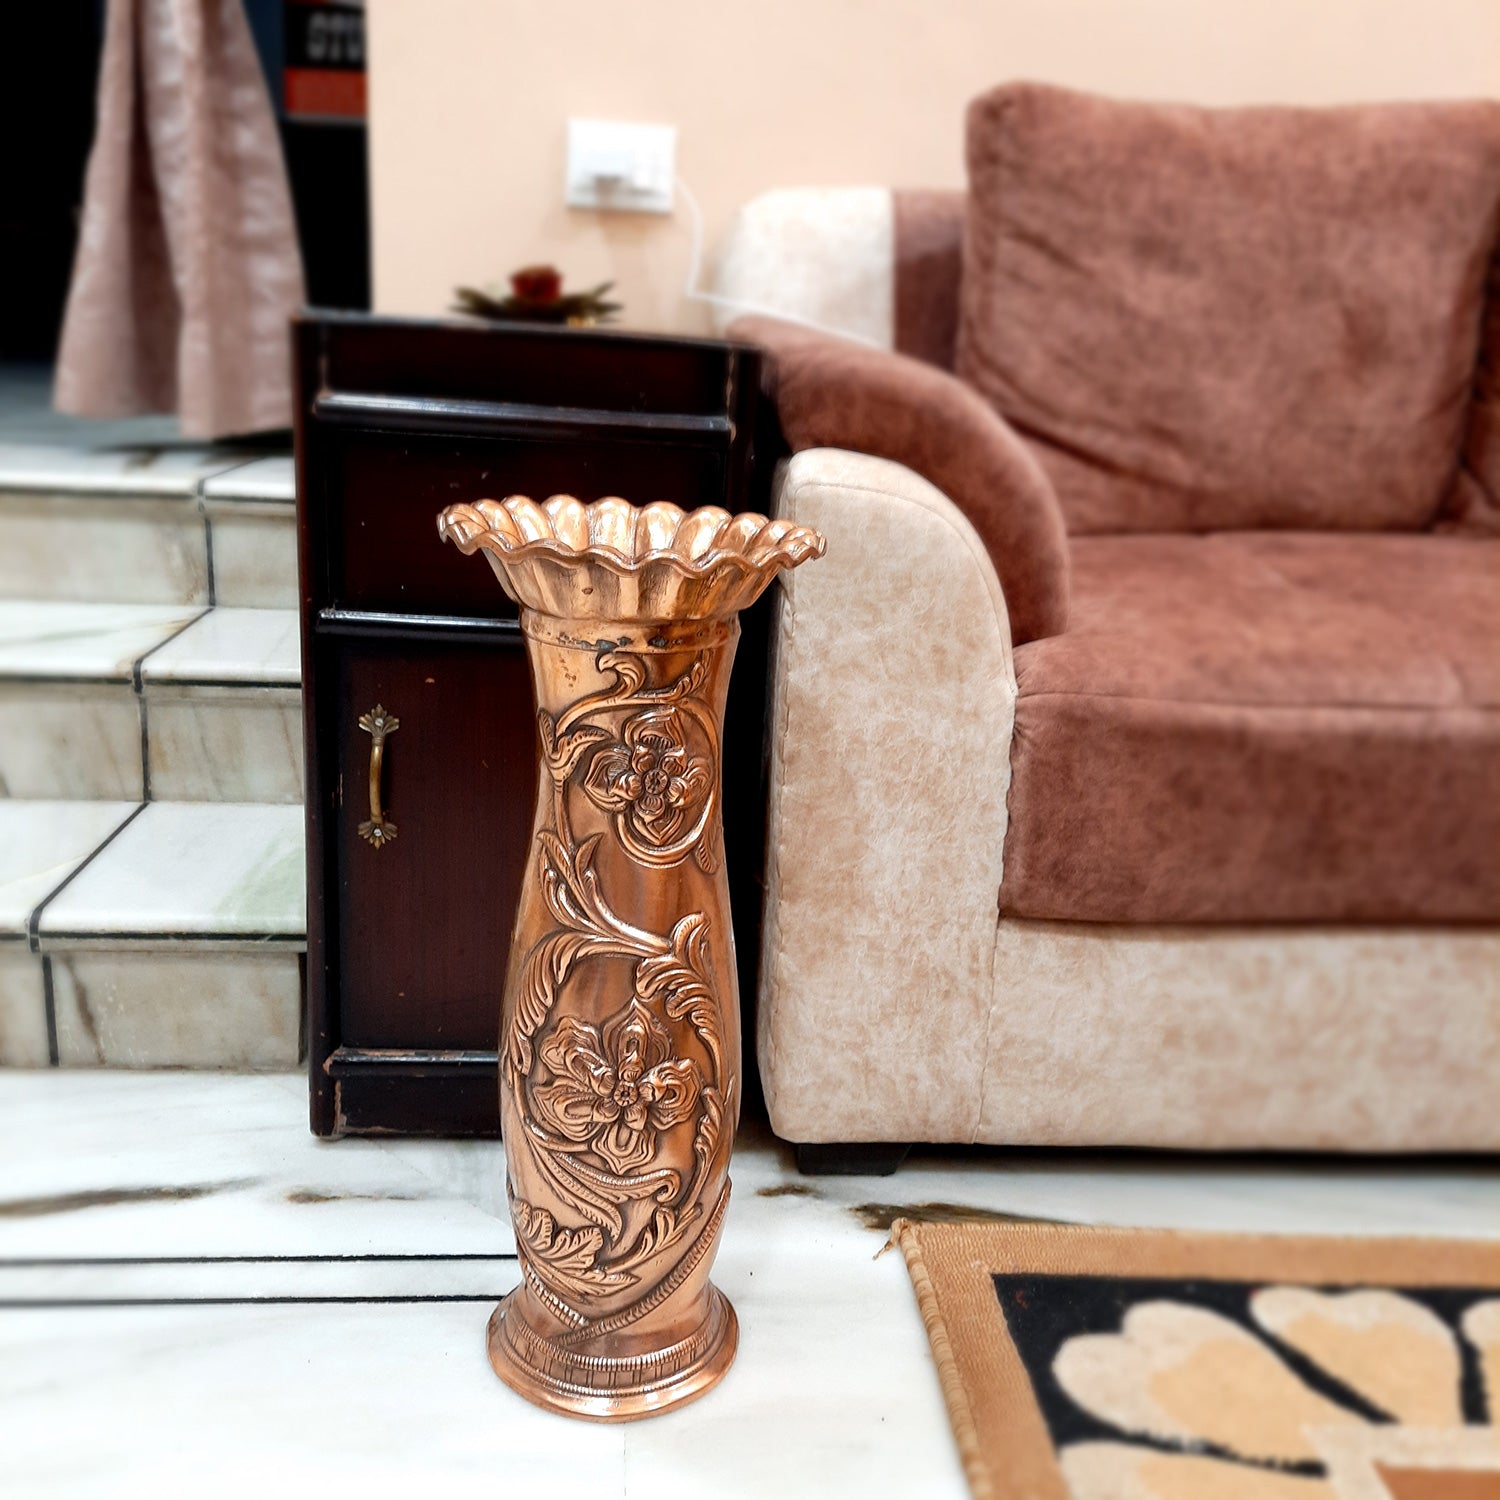 Flower Vase Big | Flower Pot for Corners - Metal | Floor Vase - For Home, Living Room, Entrance, Office & Hall Decoration | House Warming & Festival Gift - 20 inch